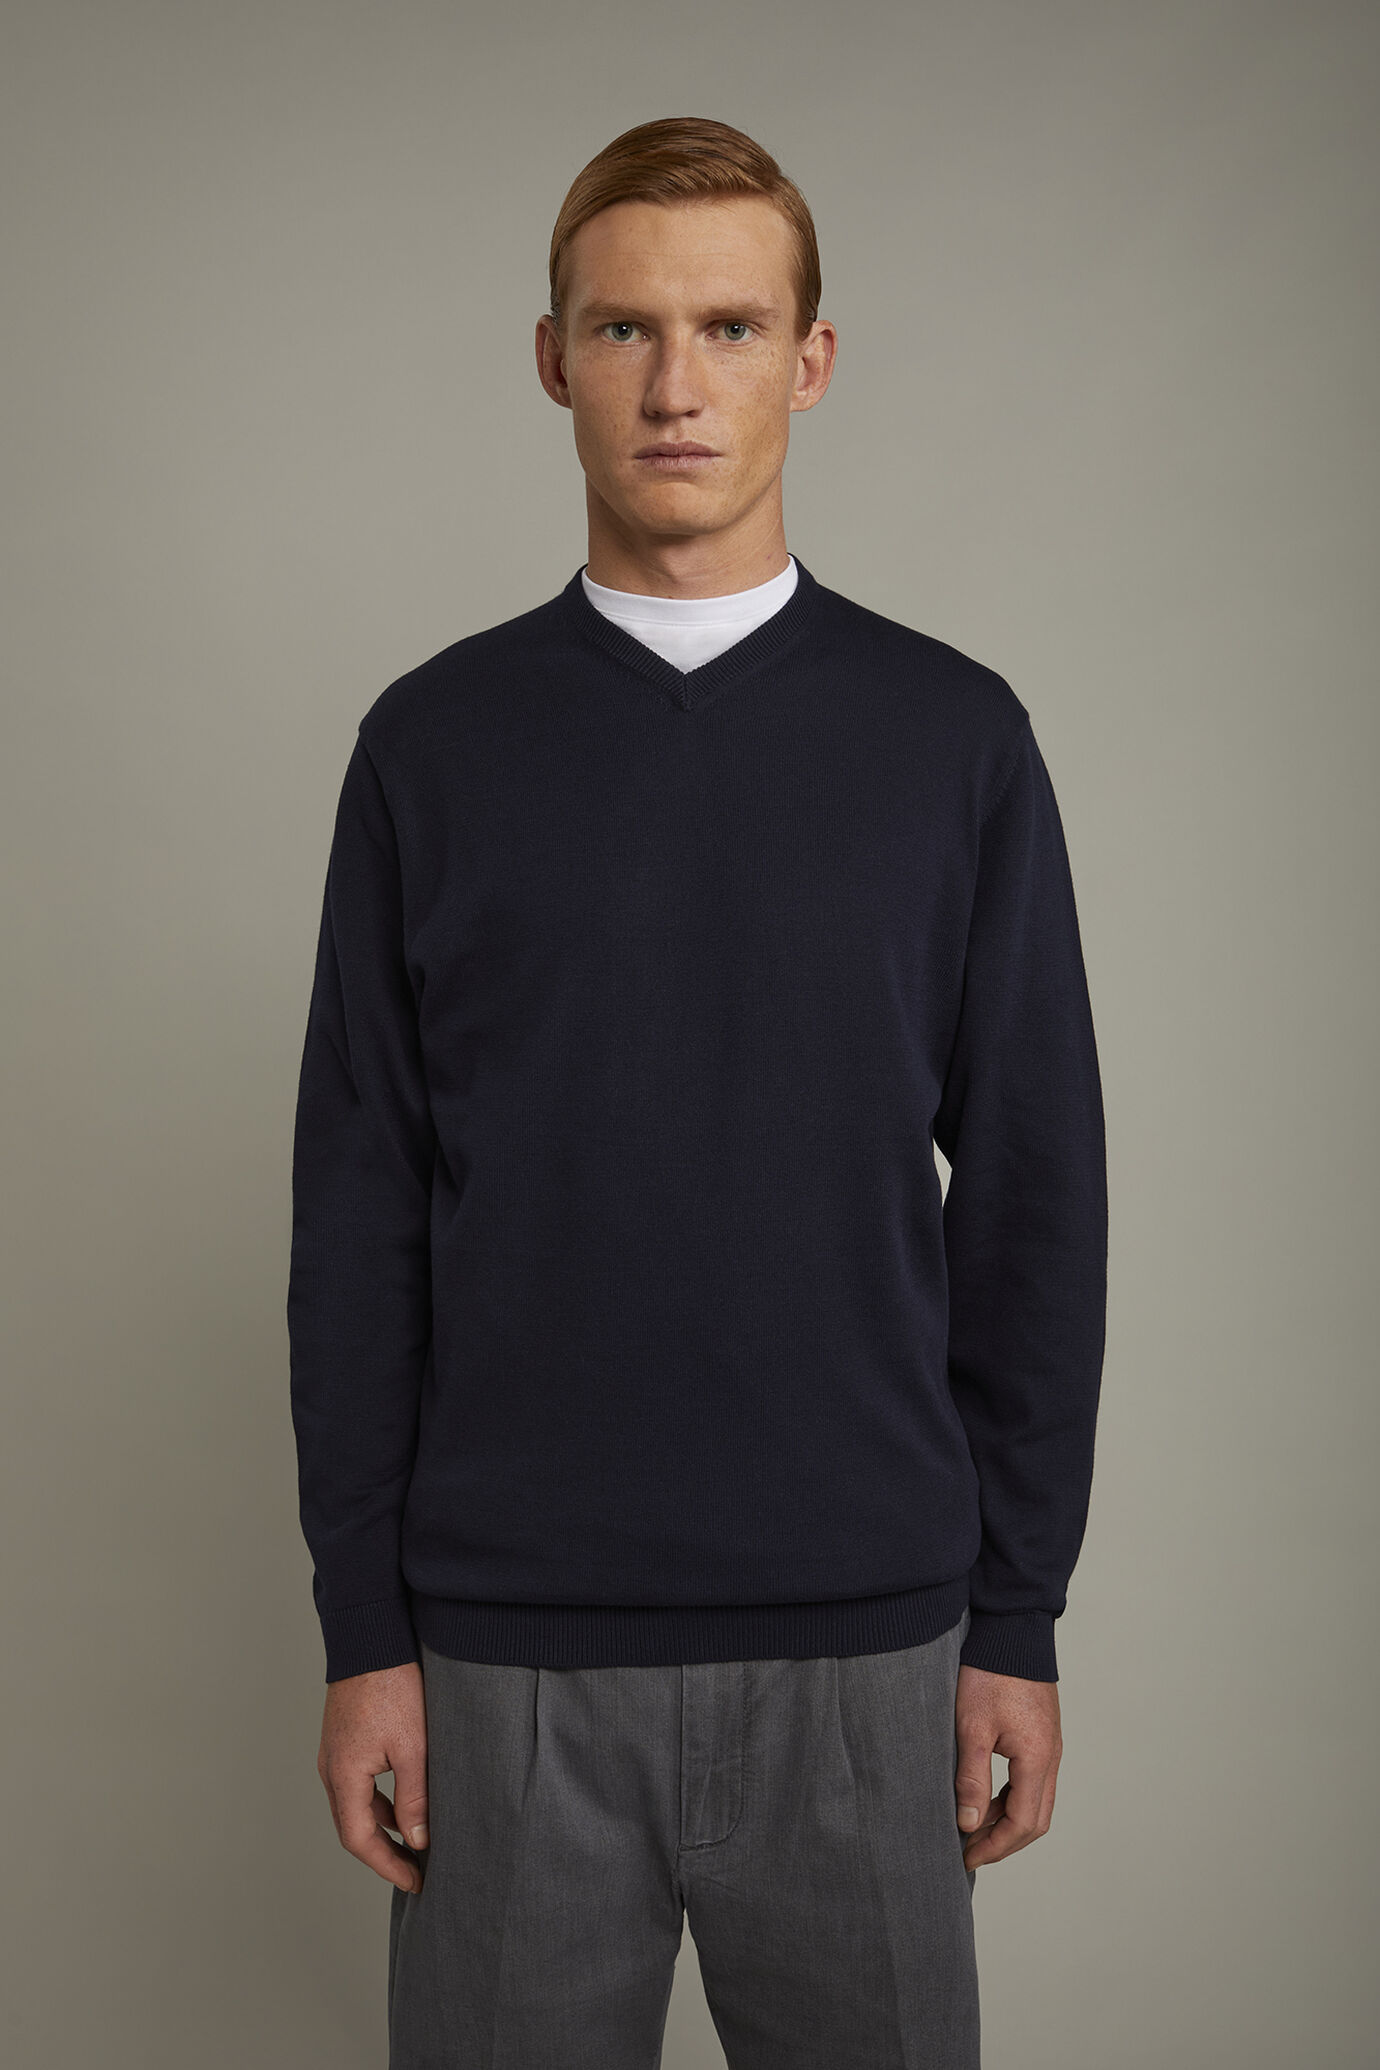 Men's v neck sweater 100% cotton regular fit